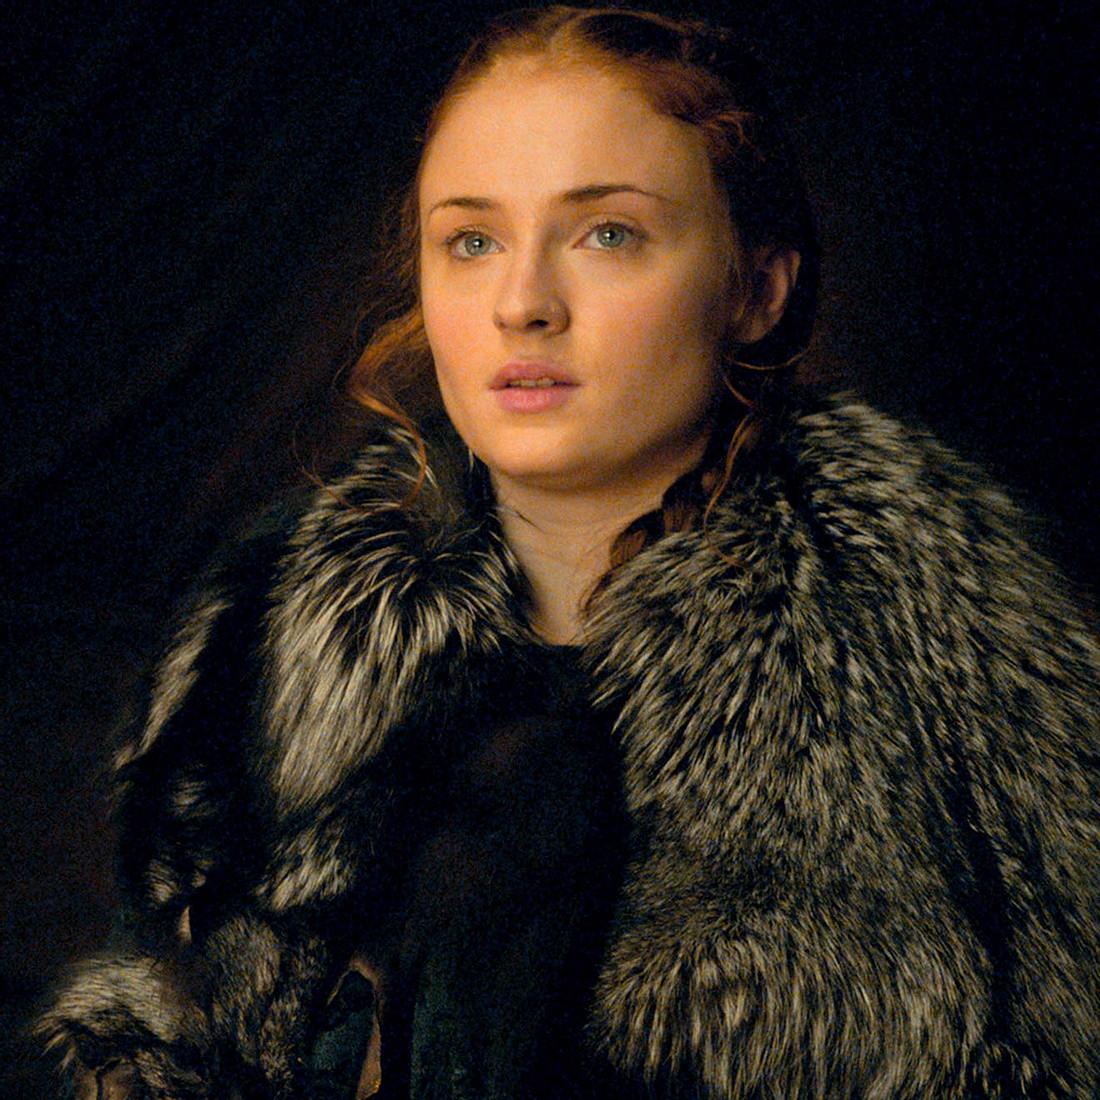 Nach acht Staffeln ist Sansa Stark (gespielt von Sophie Turner) eine der wenigen Überlebenden. Wird sie im Staffel-Finale sterben?